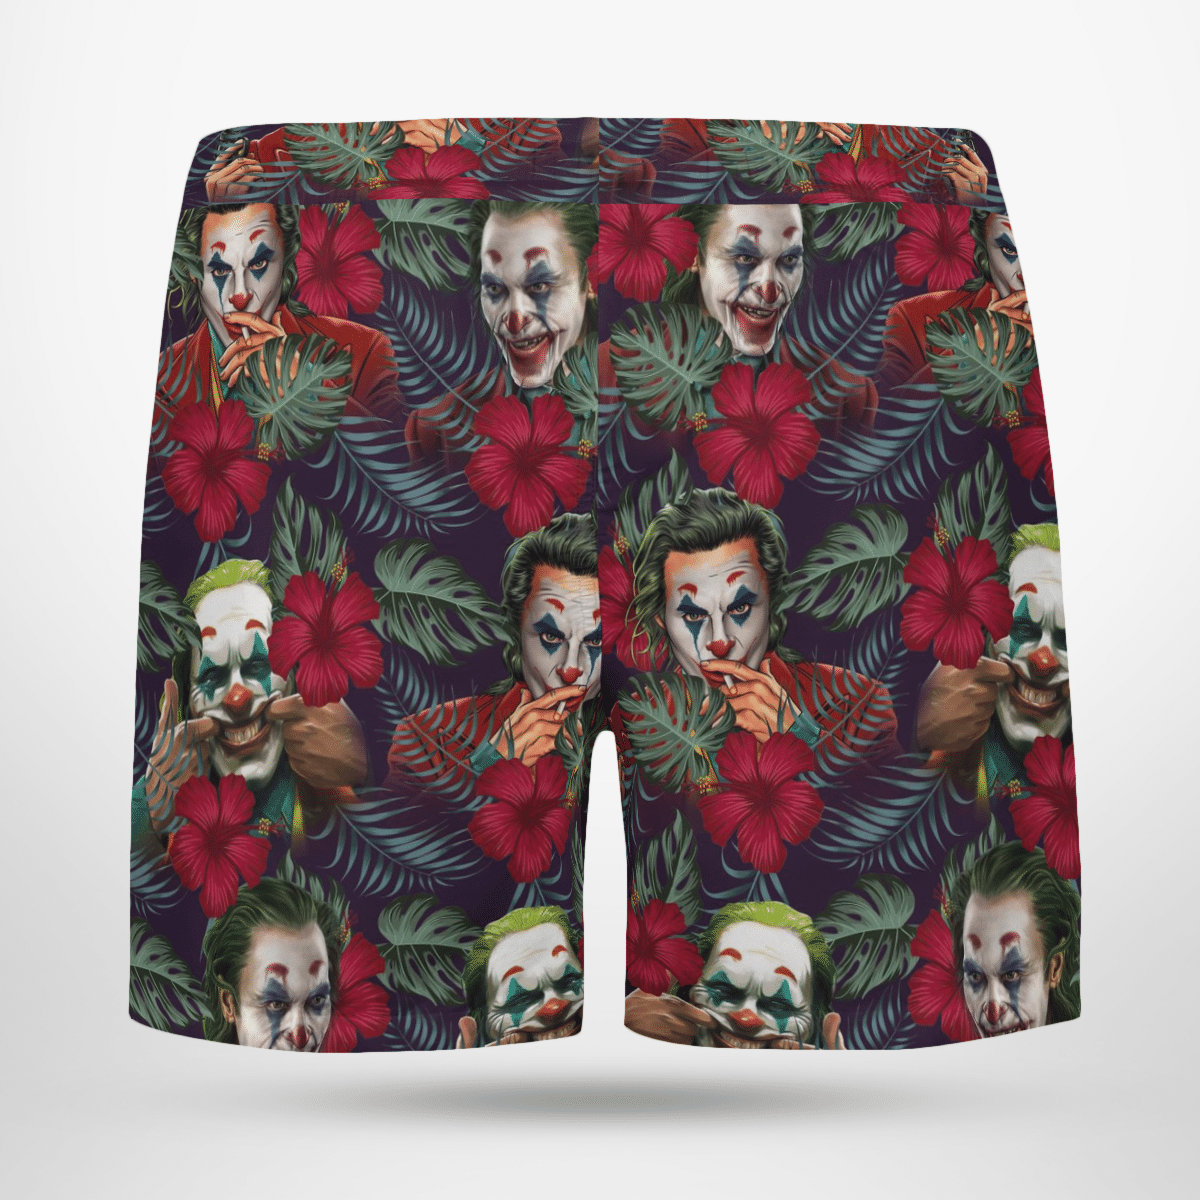 Joker cool Hawaii shirt and short 1